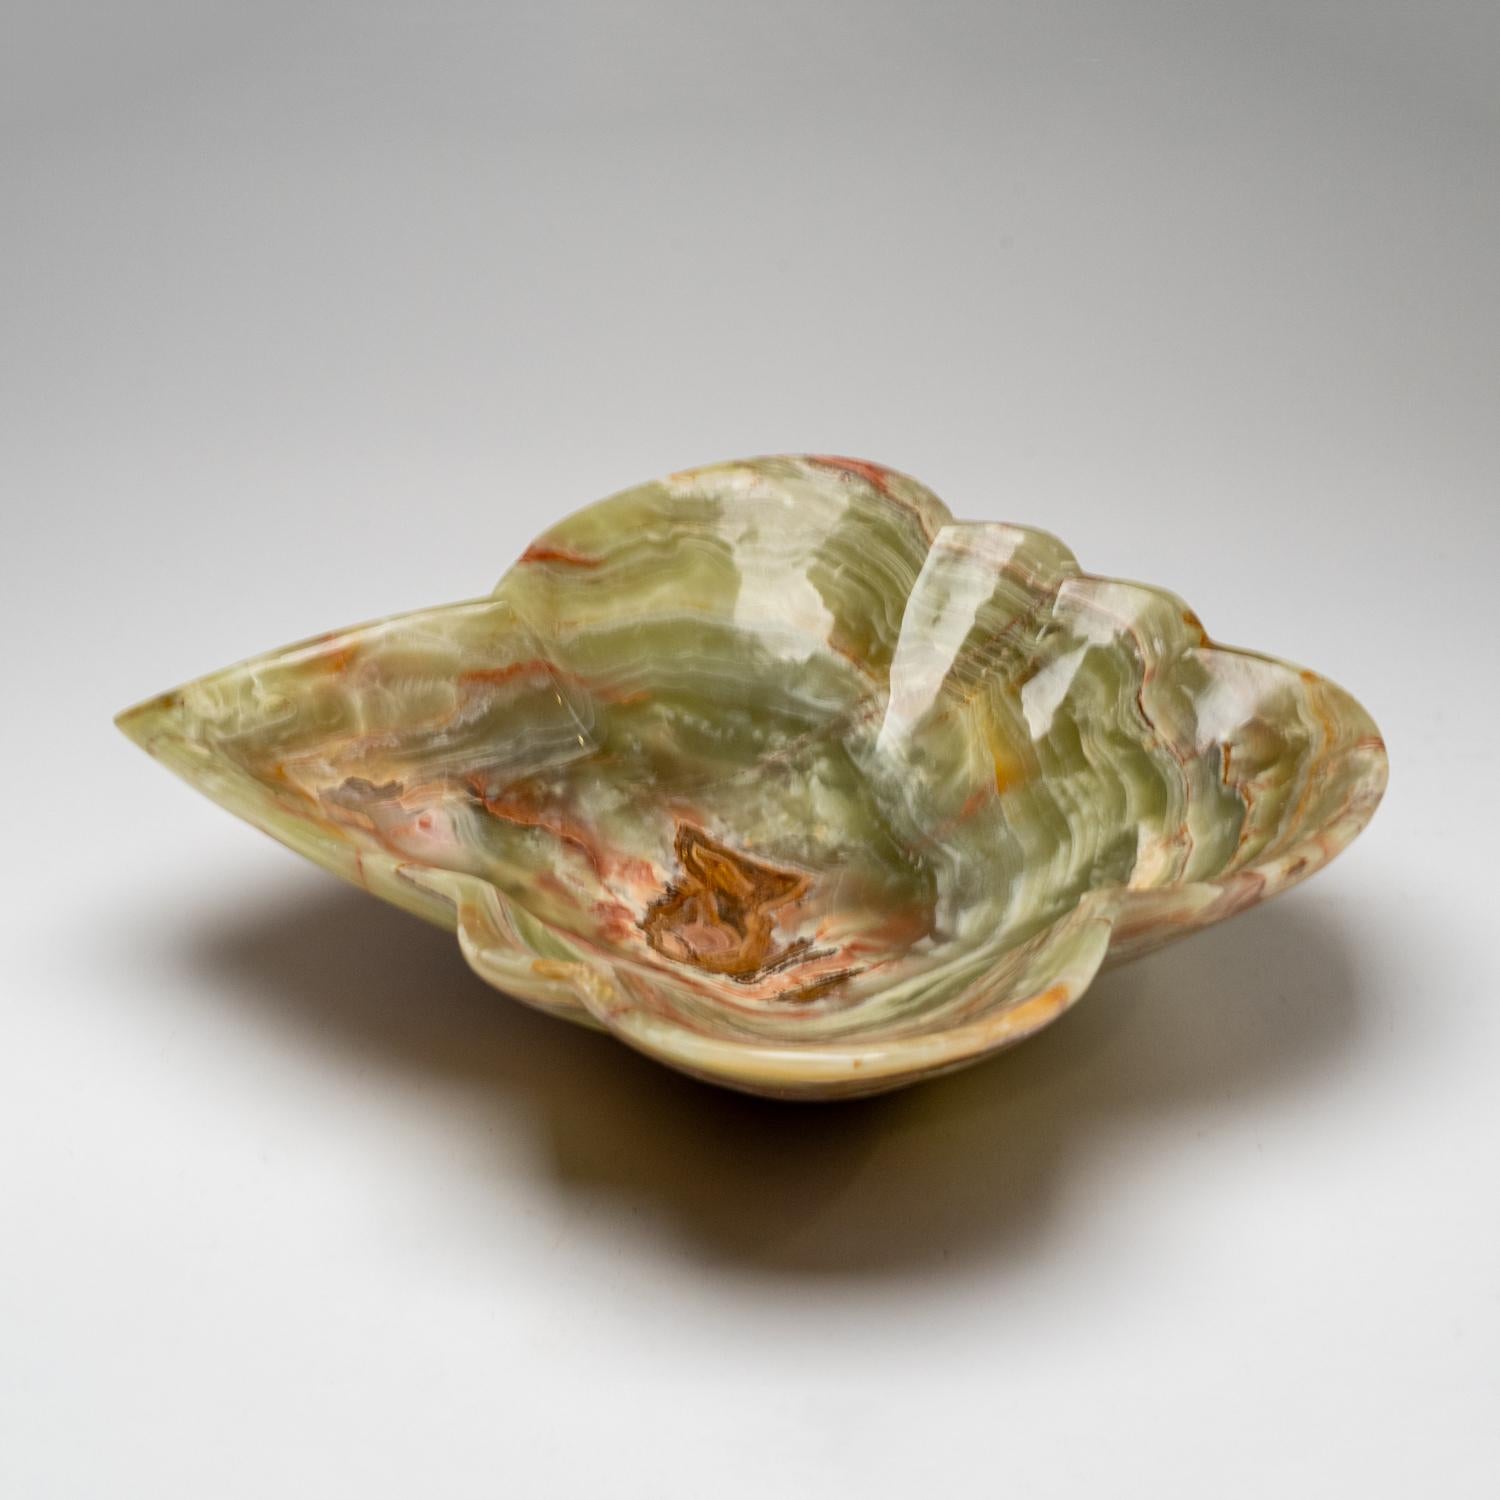 Diese einzigartige dekorative Schale in freier Form, die aus einem einzigen Stück natürlichen Onyx gefertigt ist, besticht durch ihre hochglanzpolierte Oberfläche und ihre satten, erdigen Farbtöne, die Weiß-, Honig- und Brauntöne mischen. Mit seinem